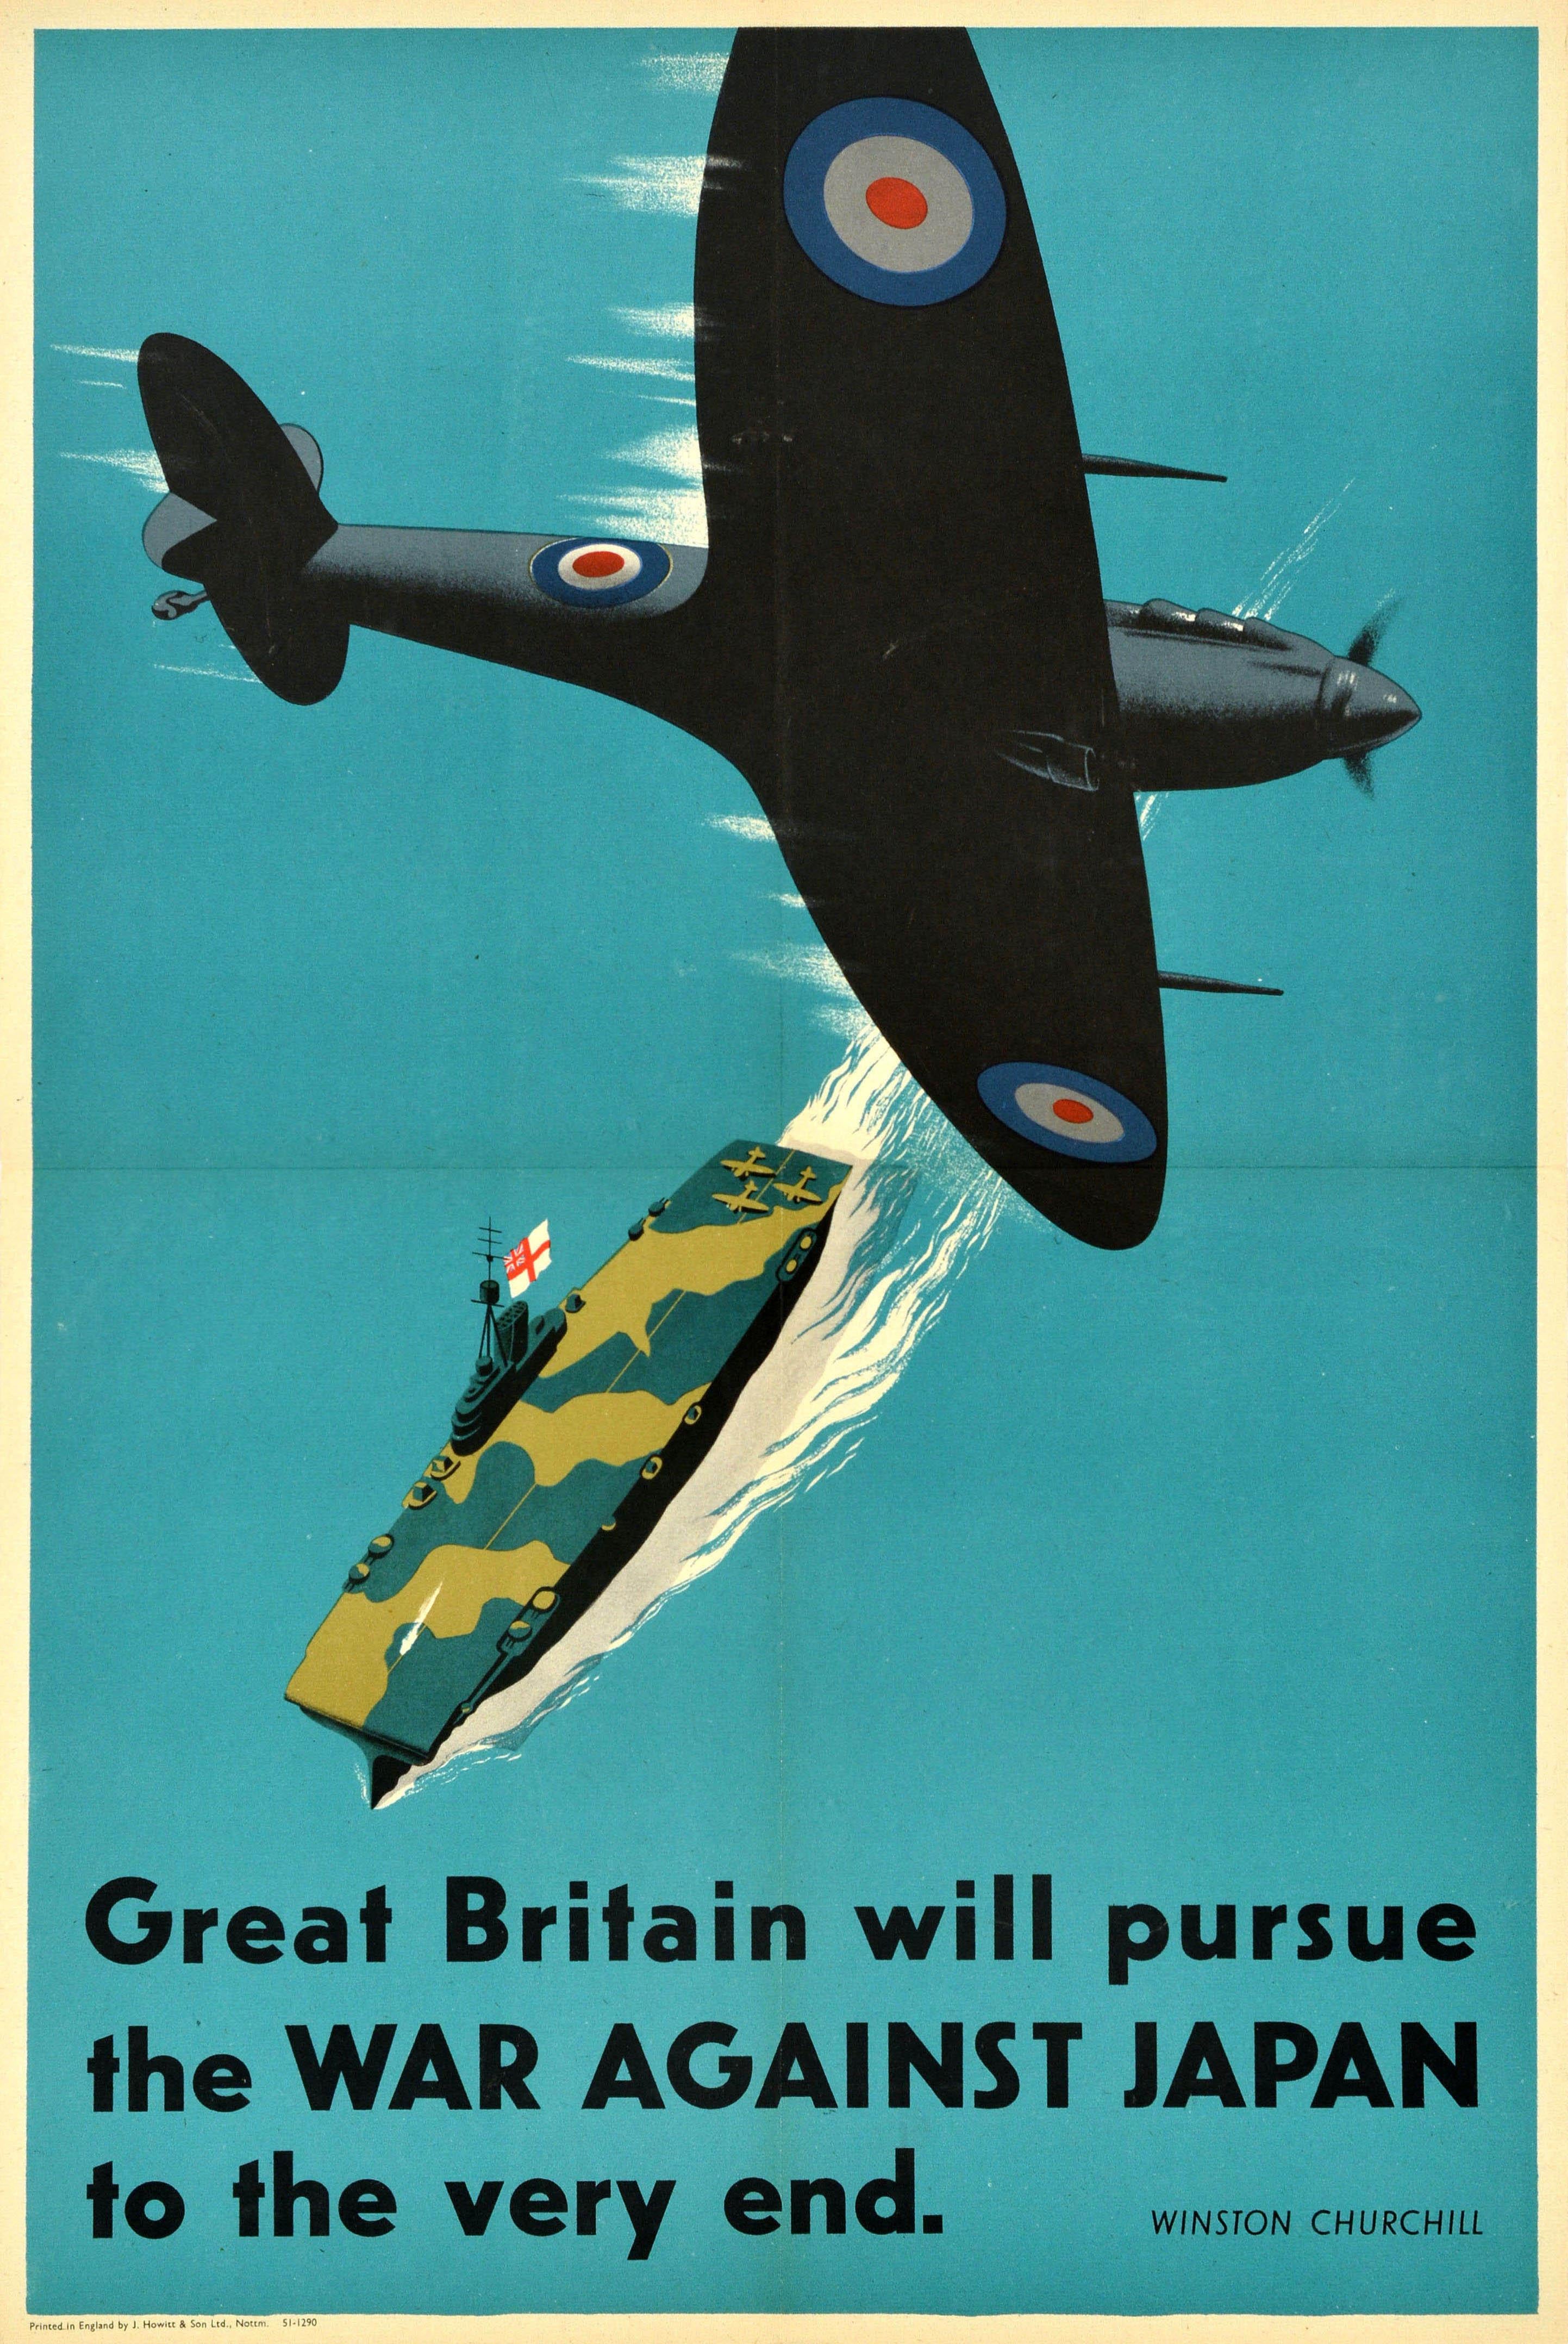 Unknown Print - Original Vintage World War Two Poster Great Britain Will Pursue Japan WWII Plane